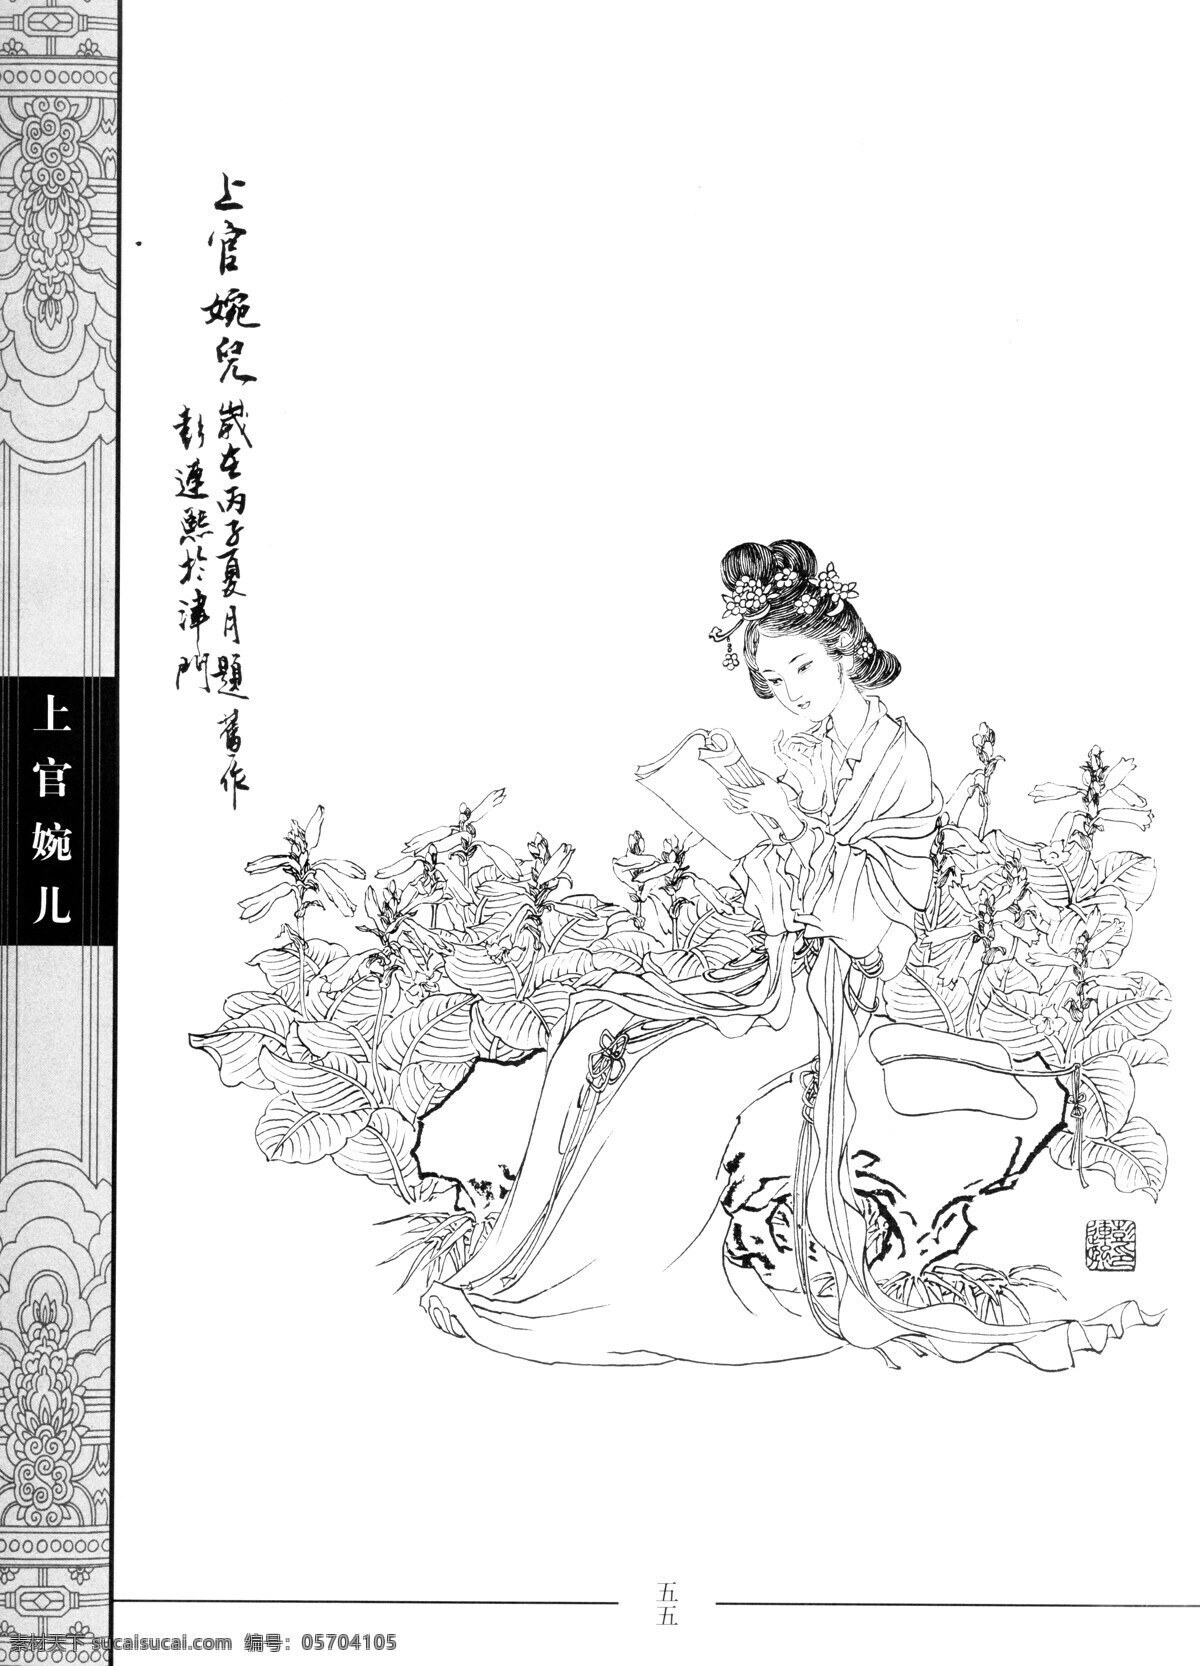 中国仕女百图 上官婉儿 仕女 彭连熙 线描 扫描 绘画书法 文化艺术